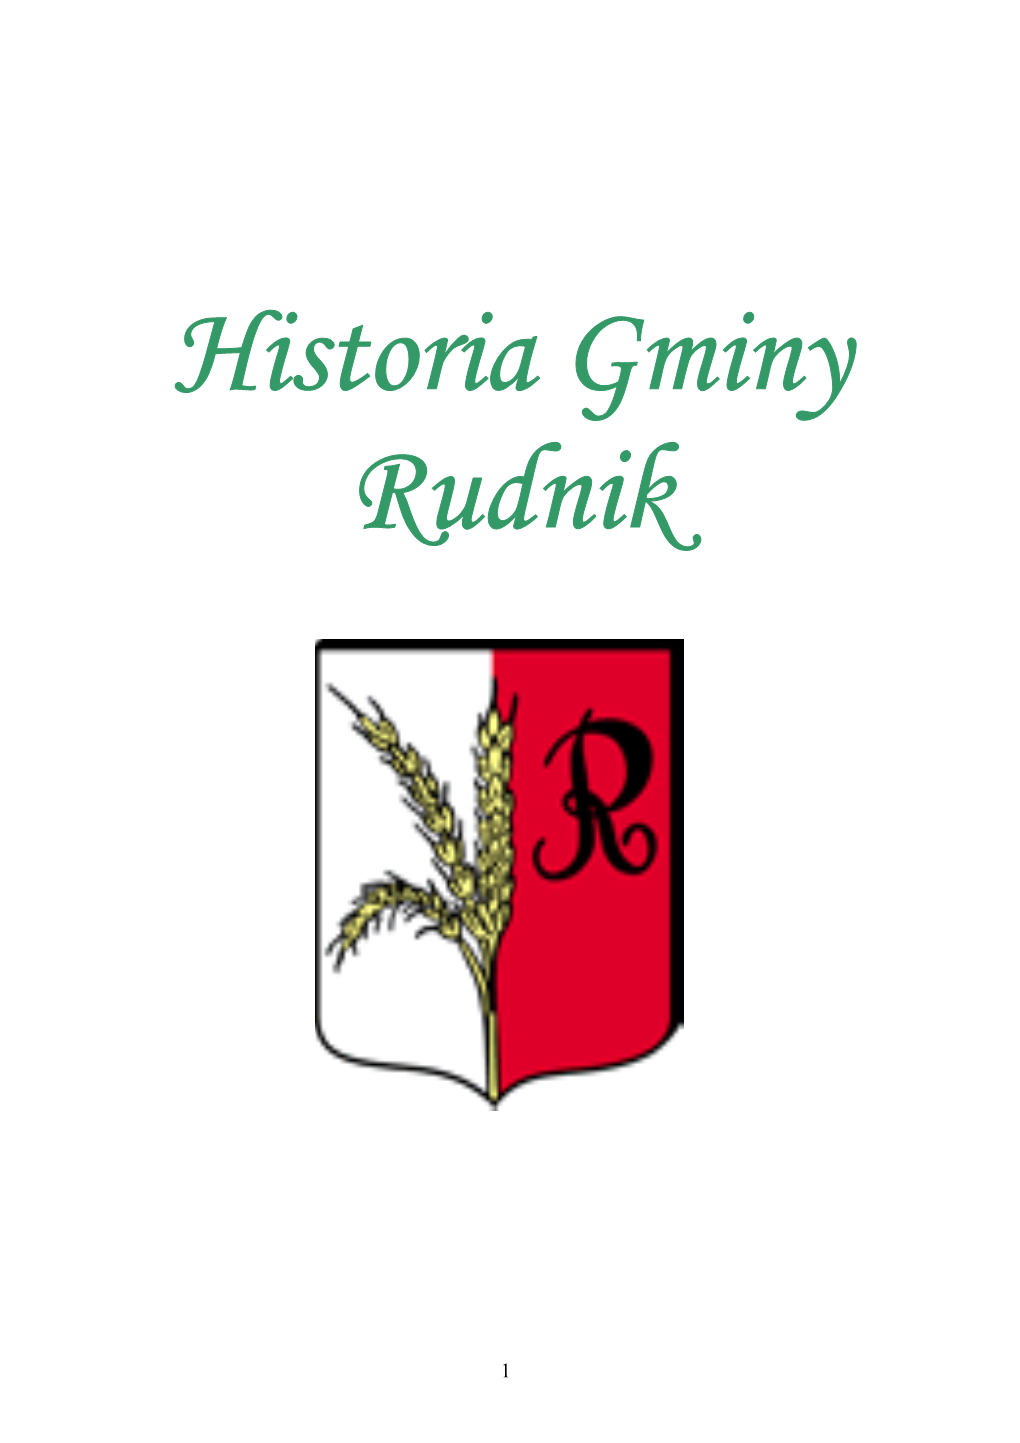 Historia Gminy Rudnik